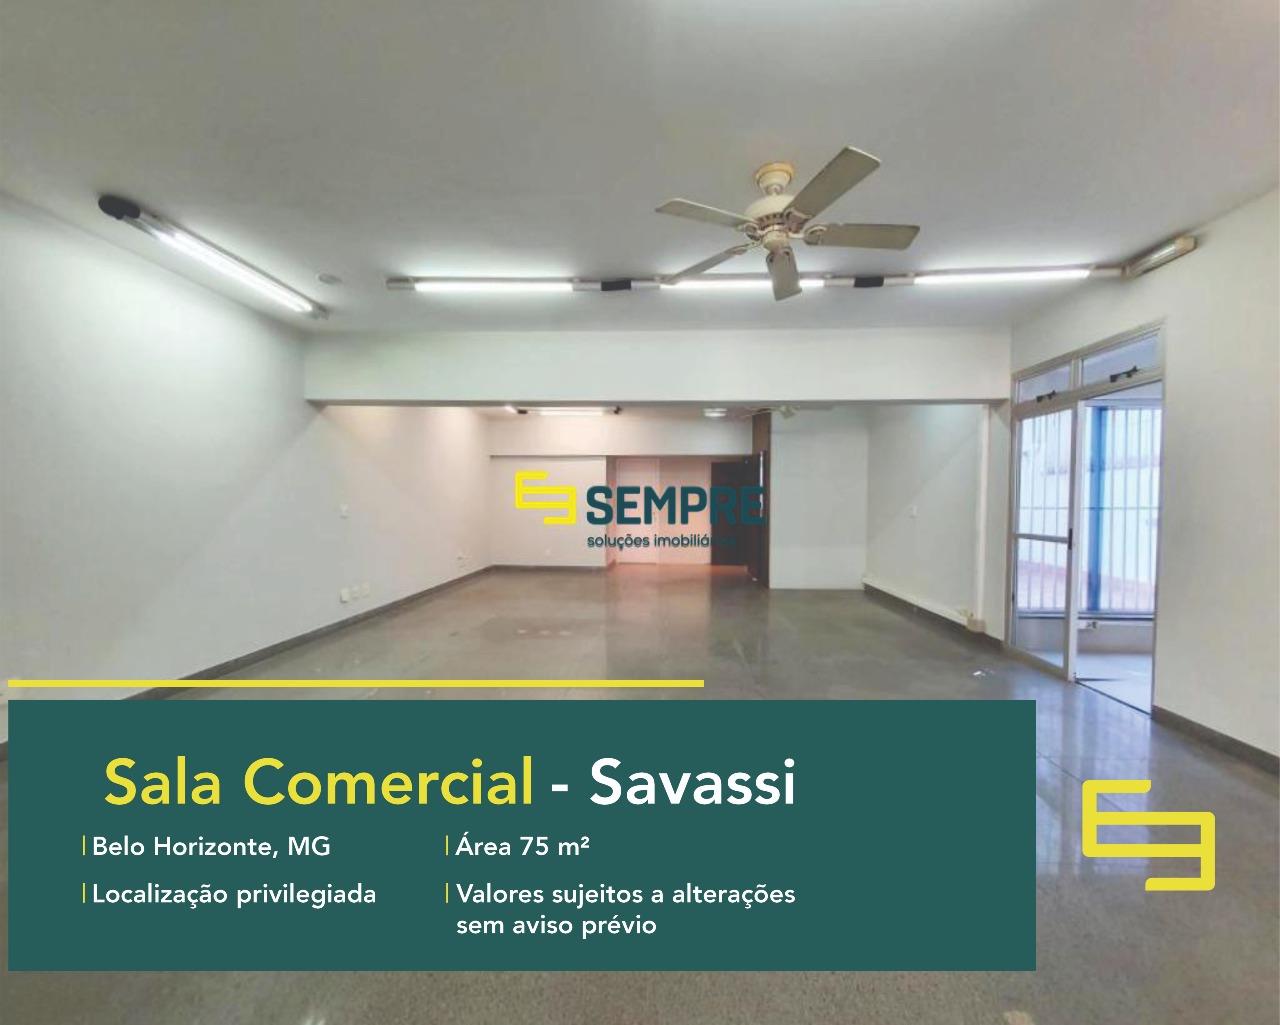 Sala comercial para alugar em BH no bairro Savassi, em excelente localização. O estabelecimento comercial conta, sobretudo, com área de 75 m²